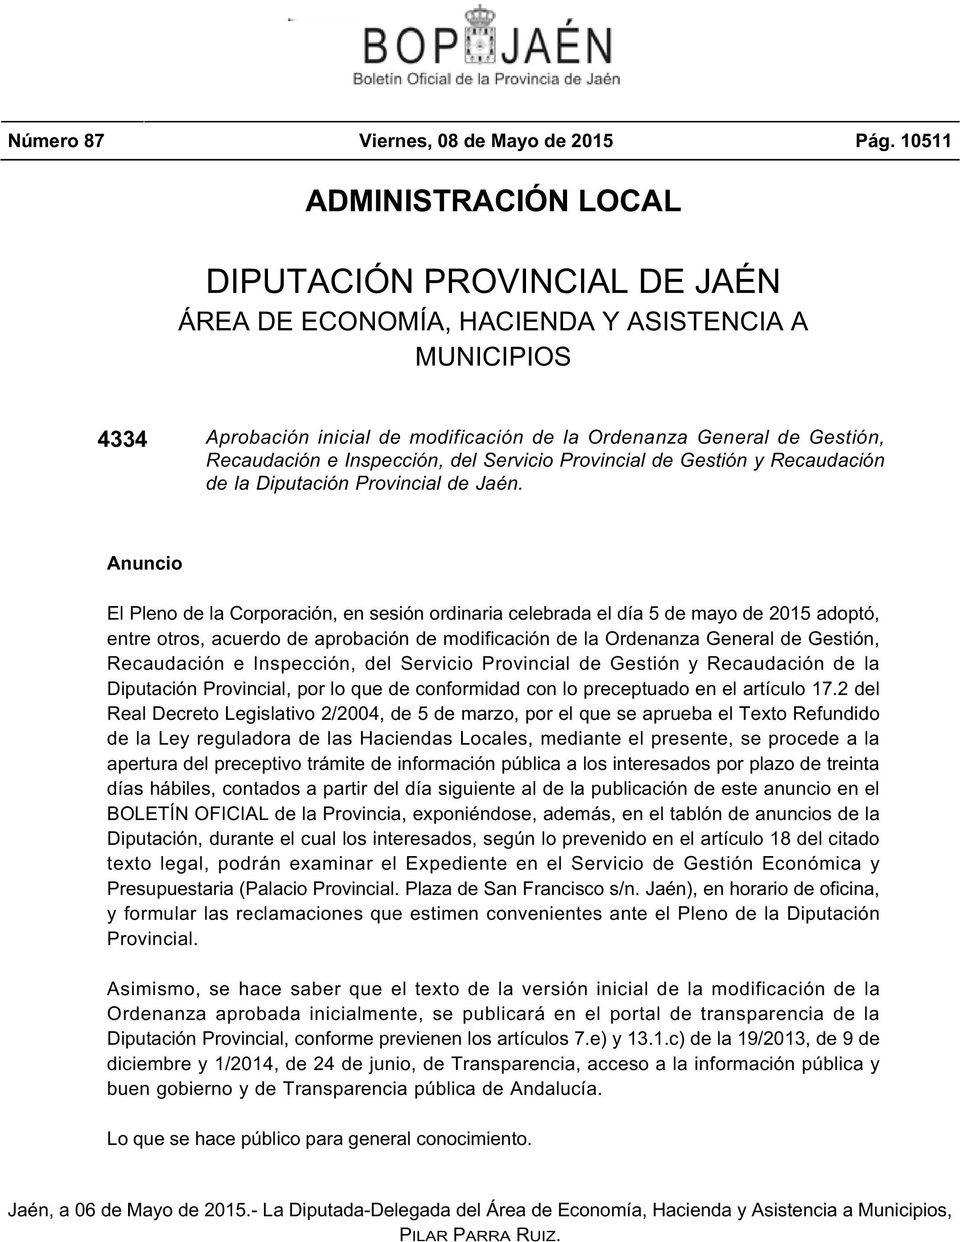 Inspección, del Servicio Provincial de Gestión y Recaudación de la Diputación Provincial de Jaén.